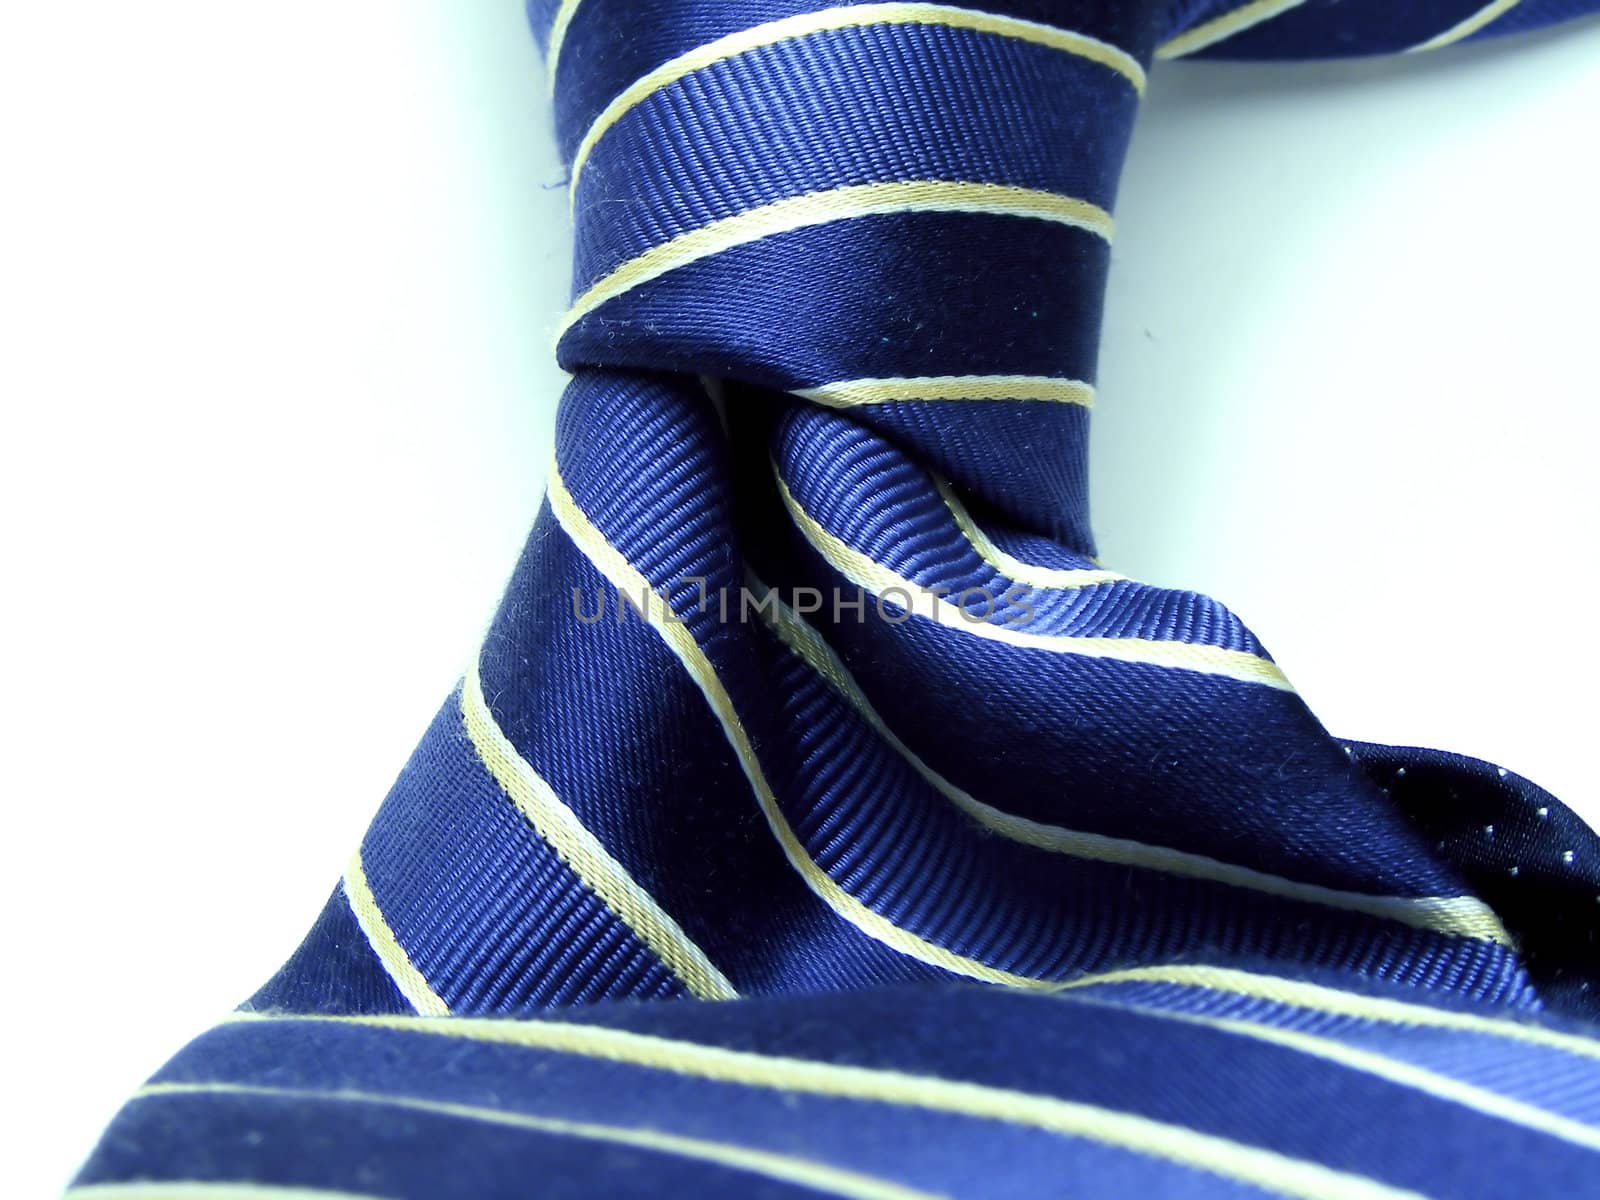 Striped designer silk tie on white background.